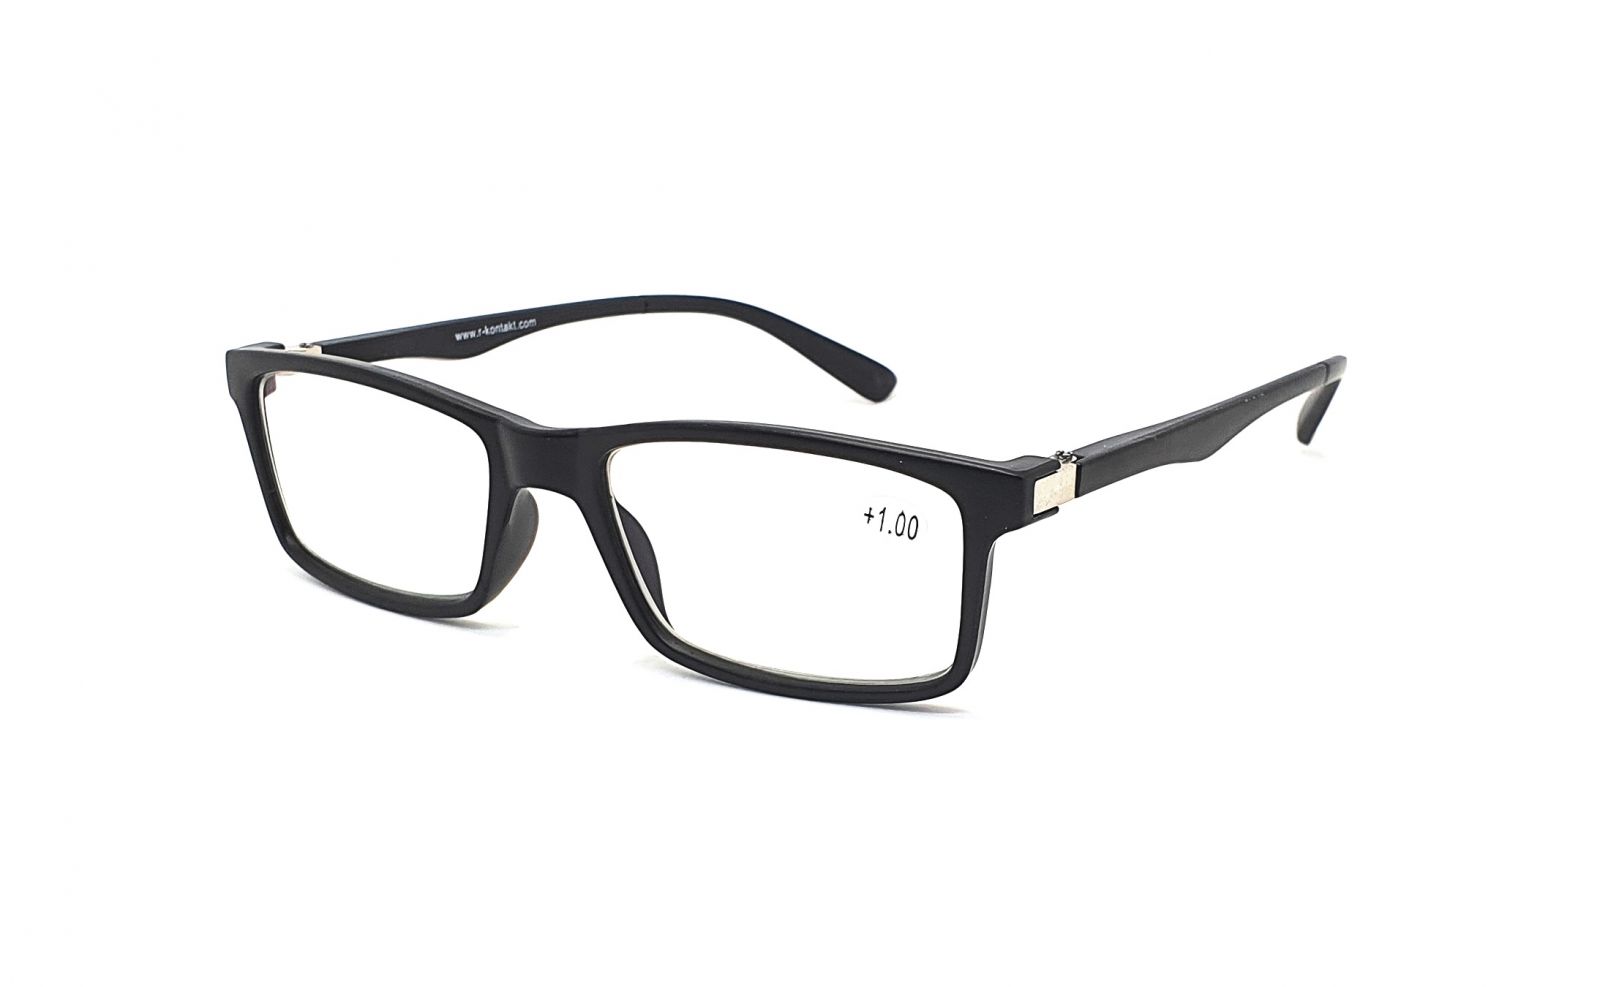 Samozabarvovací dioptrické brýle V3060 / +3,50 black flex